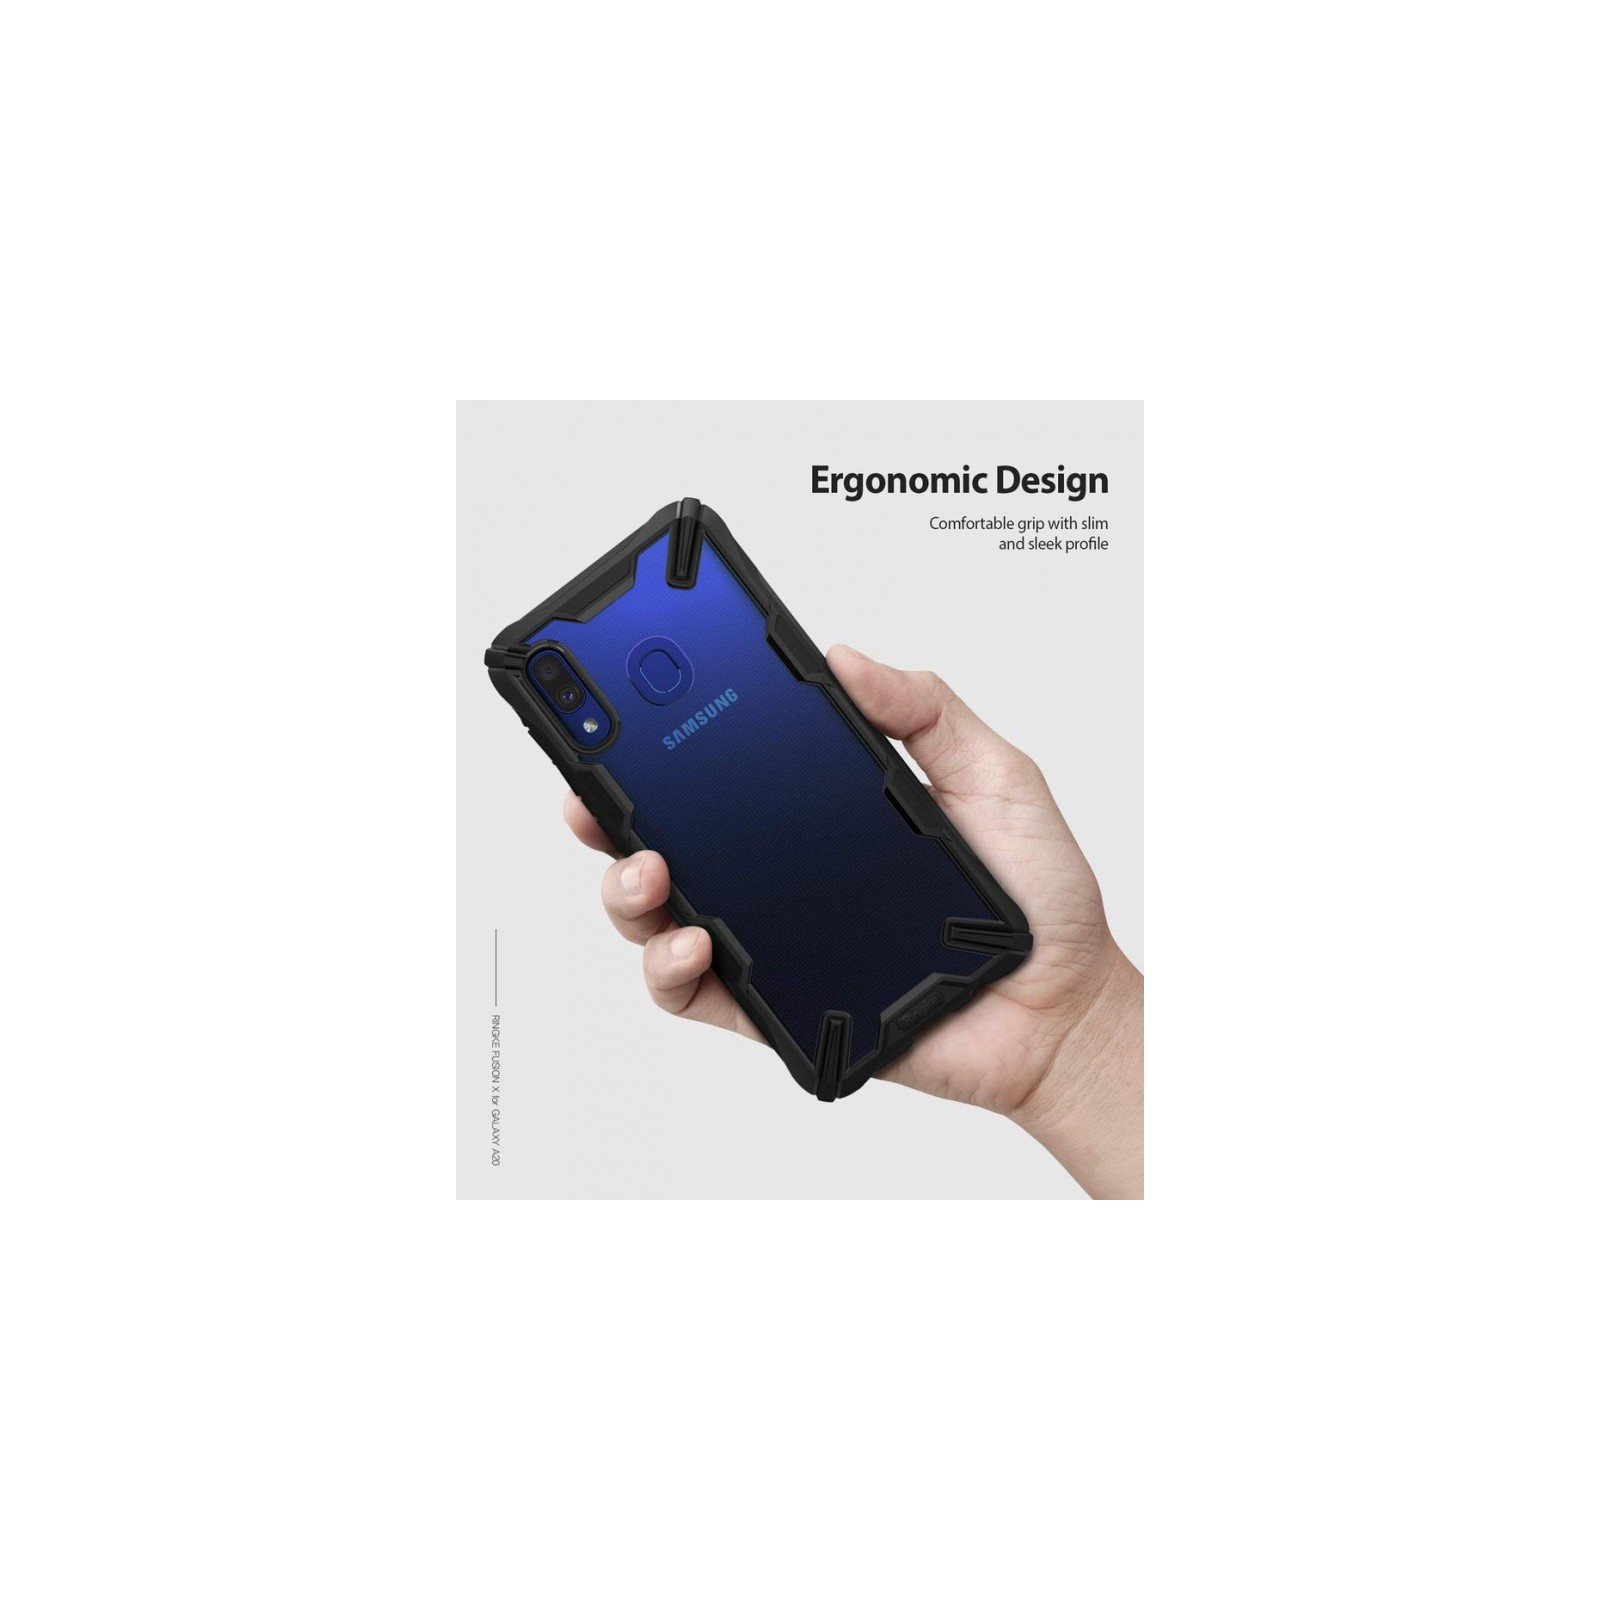 Чехол для мобильного телефона Ringke Fusion X Samsung Galaxy A20 Black (RCS4521) изображение 3